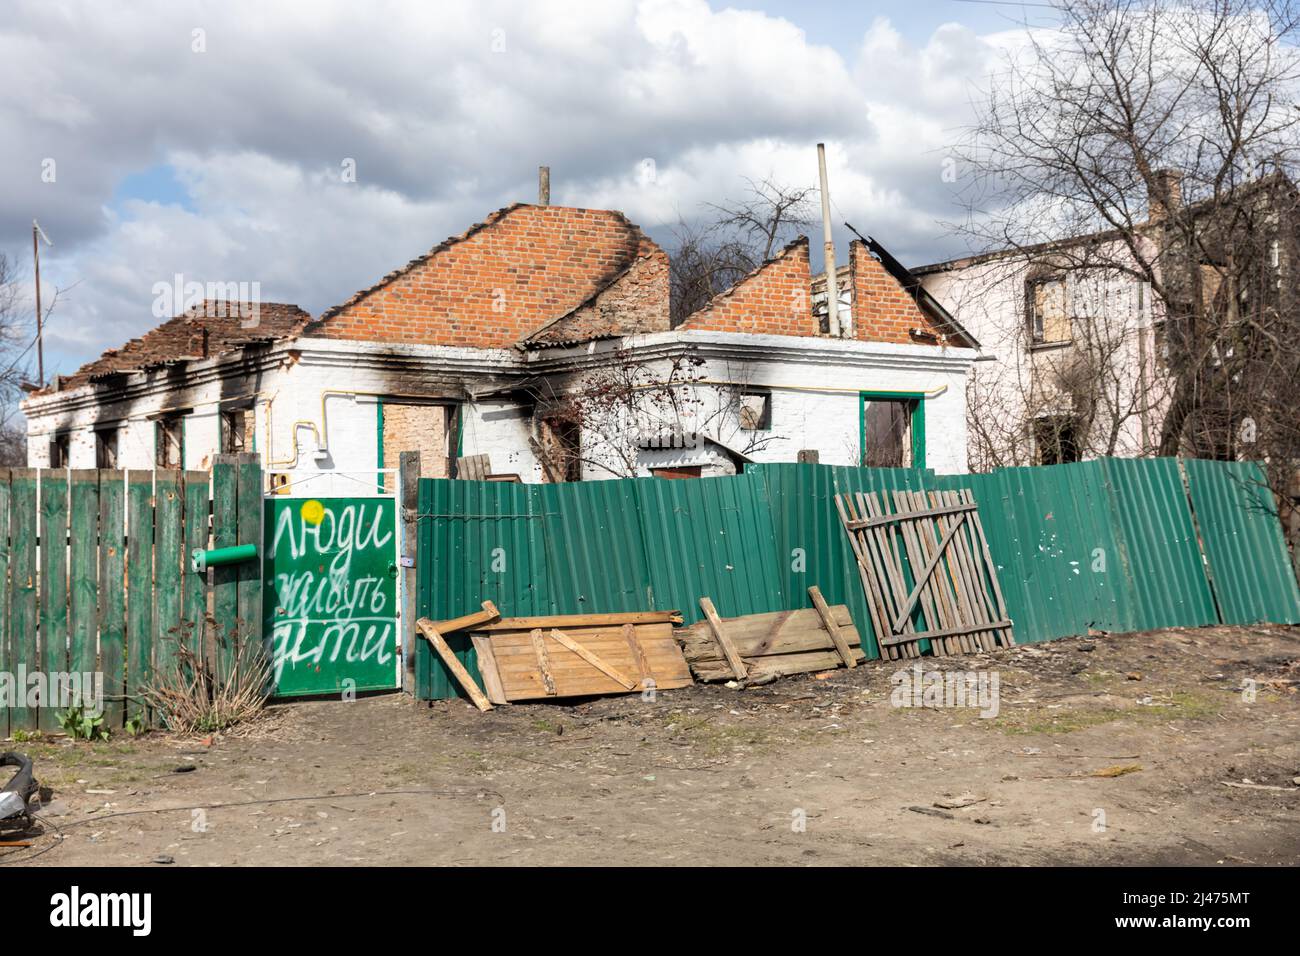 ANDRIIVKA, UCRAINA - 12 aprile 2022: Caos e devastazione per le strade di Andriivka a seguito dell'attacco degli invasori russi. L'iscrizione sulla porta - la gente vive, i bambini Foto Stock